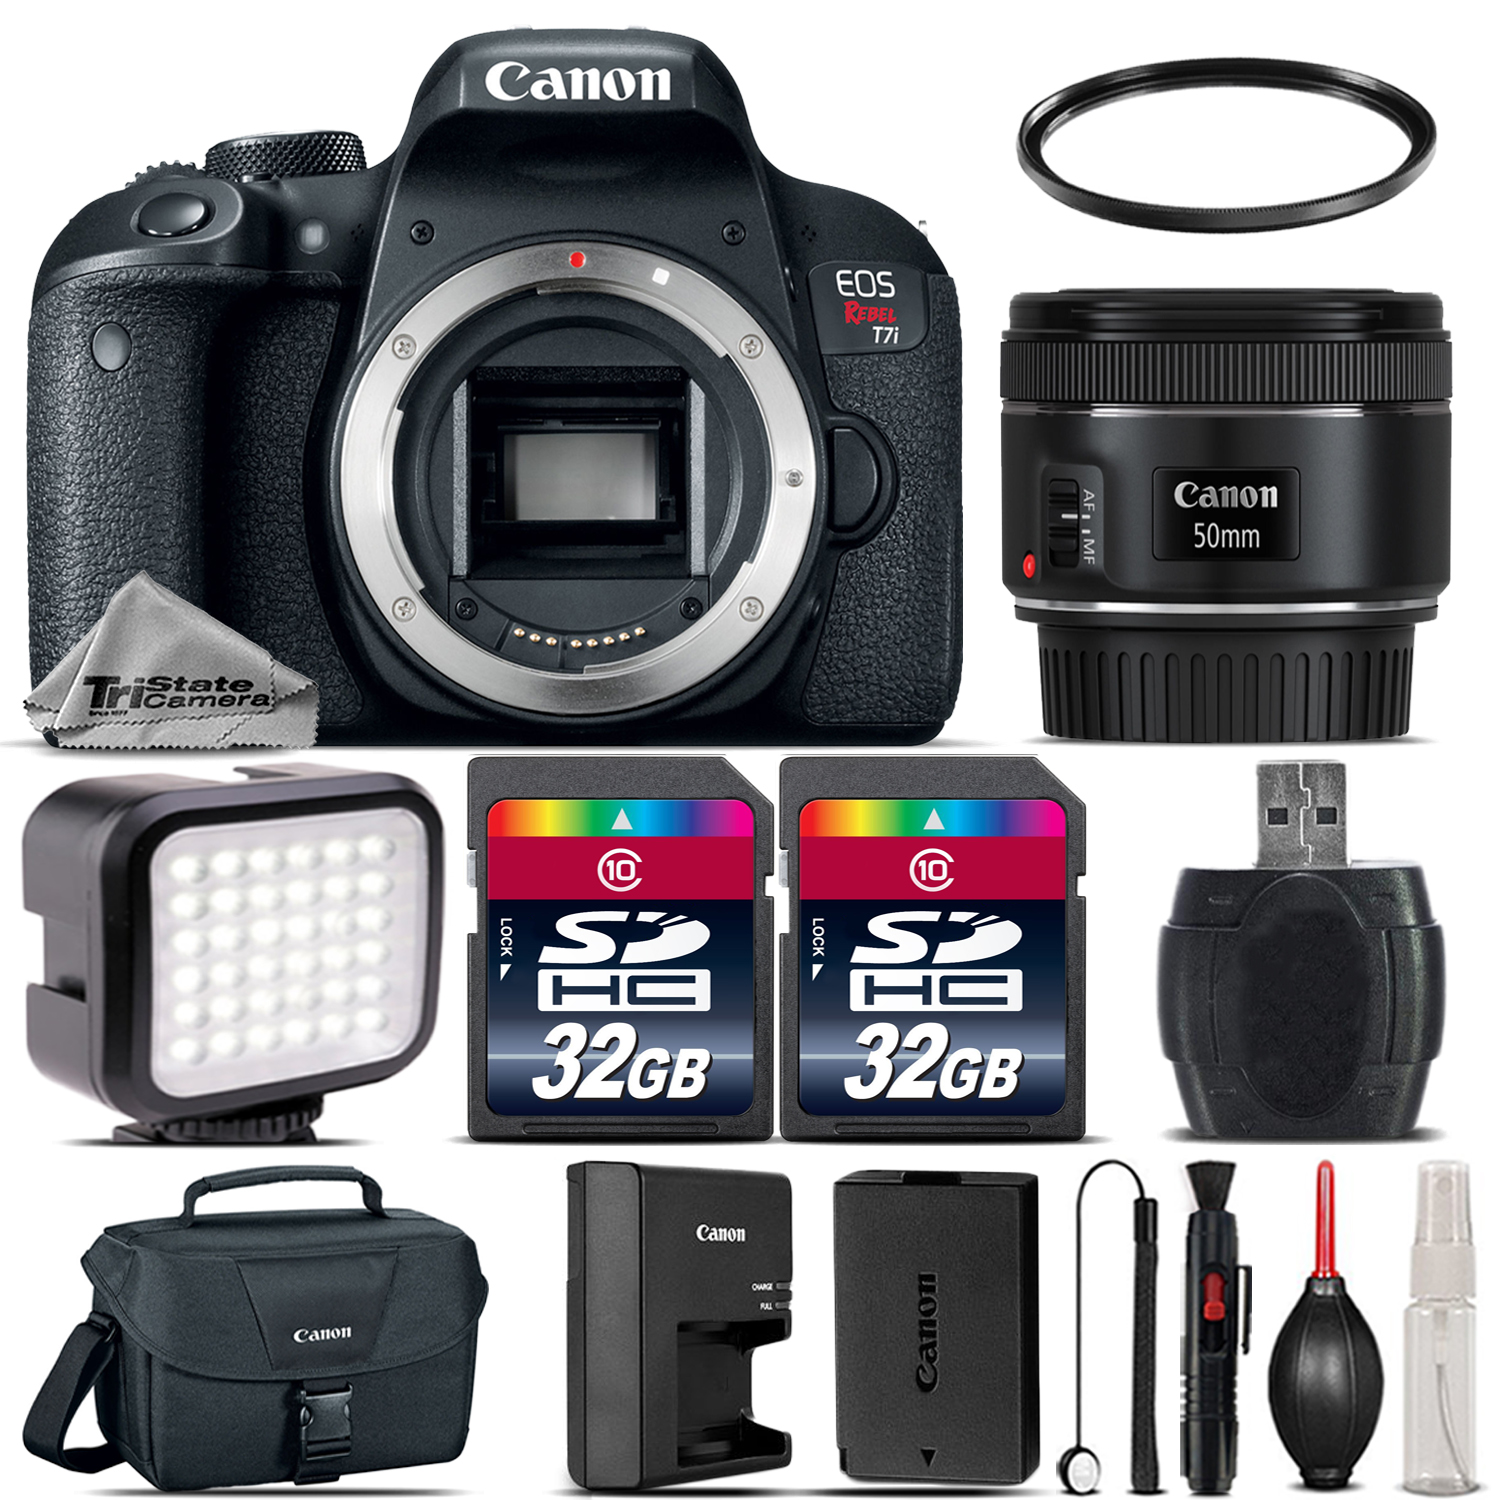 EOS Rebel T7i Camera 800D + 18-55 STM + LED Light + Case & More - 64GB Kit *FREE SHIPPING*